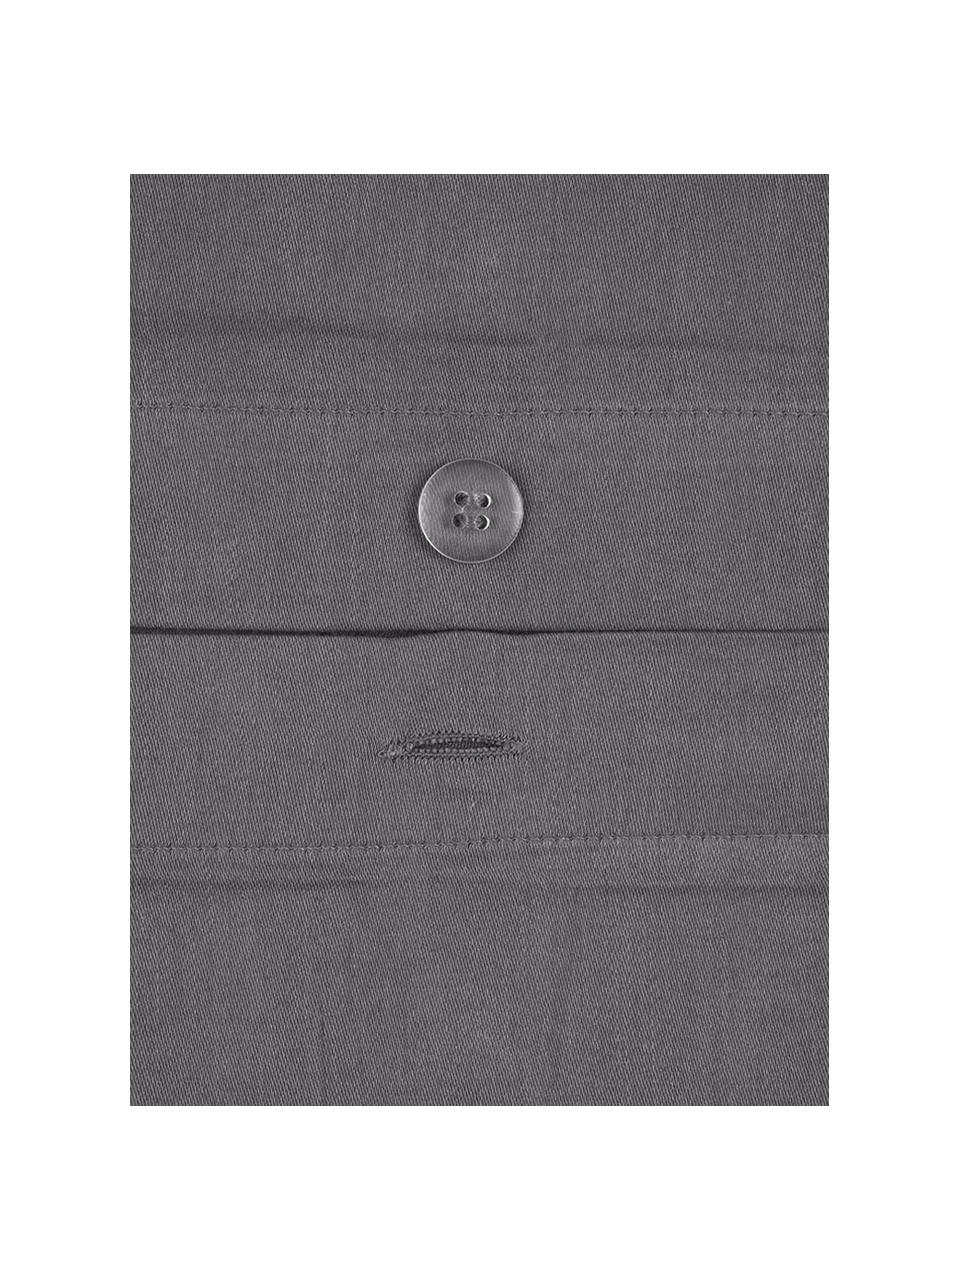 Biancheria da letto in raso di cotone grigio scuro Comfort, Tessuto: raso Densità del filo 250, Grigio scuro, 240 x 300 cm + 2 federe 50 x 80 cm